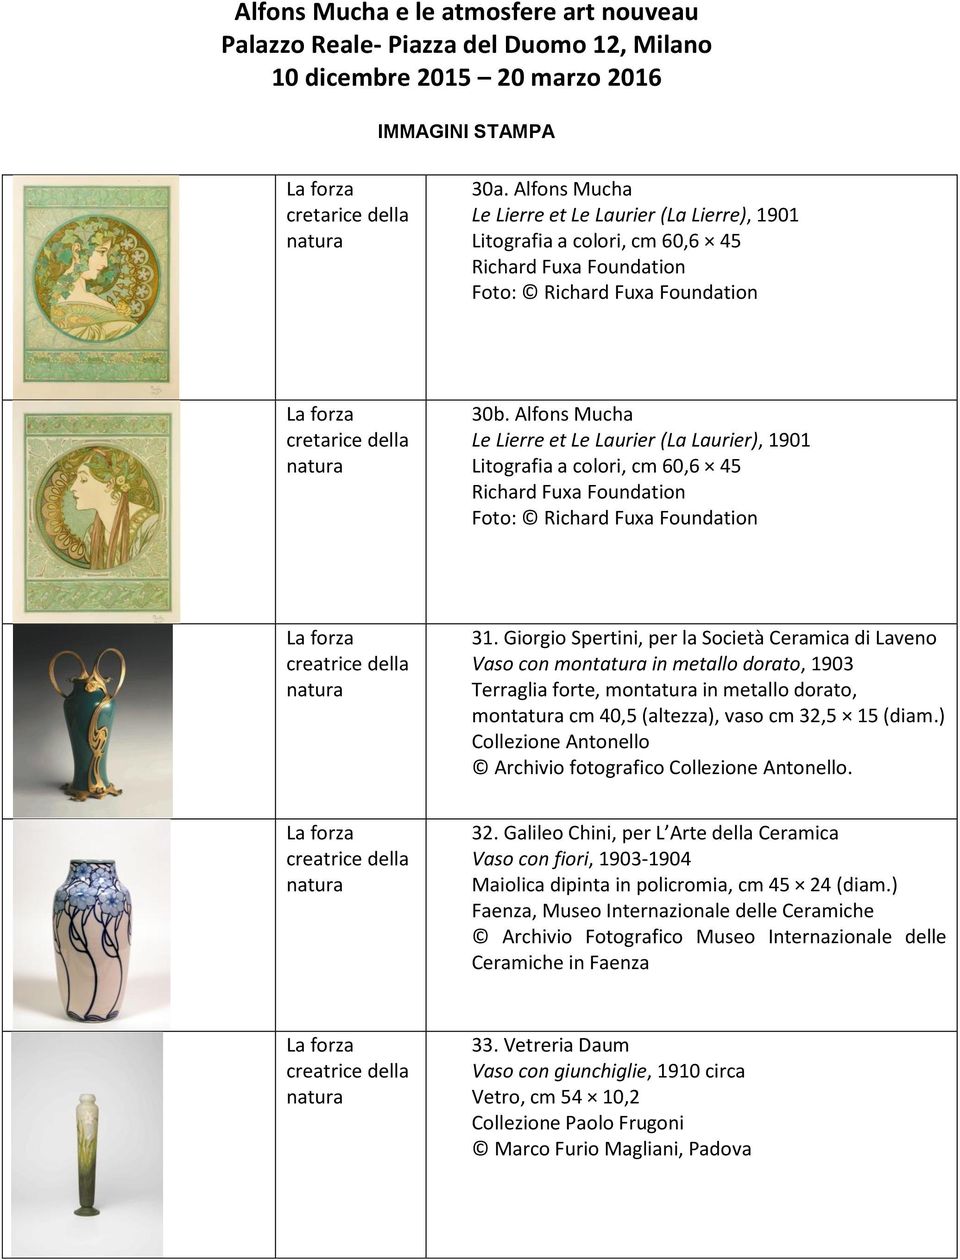 Giorgio Spertini, per la Società Ceramica di Laveno Vaso con montatura in metallo dorato, 1903 Terraglia forte, montatura in metallo dorato, montatura cm 40,5 (altezza), vaso cm 32,5 15 (diam.